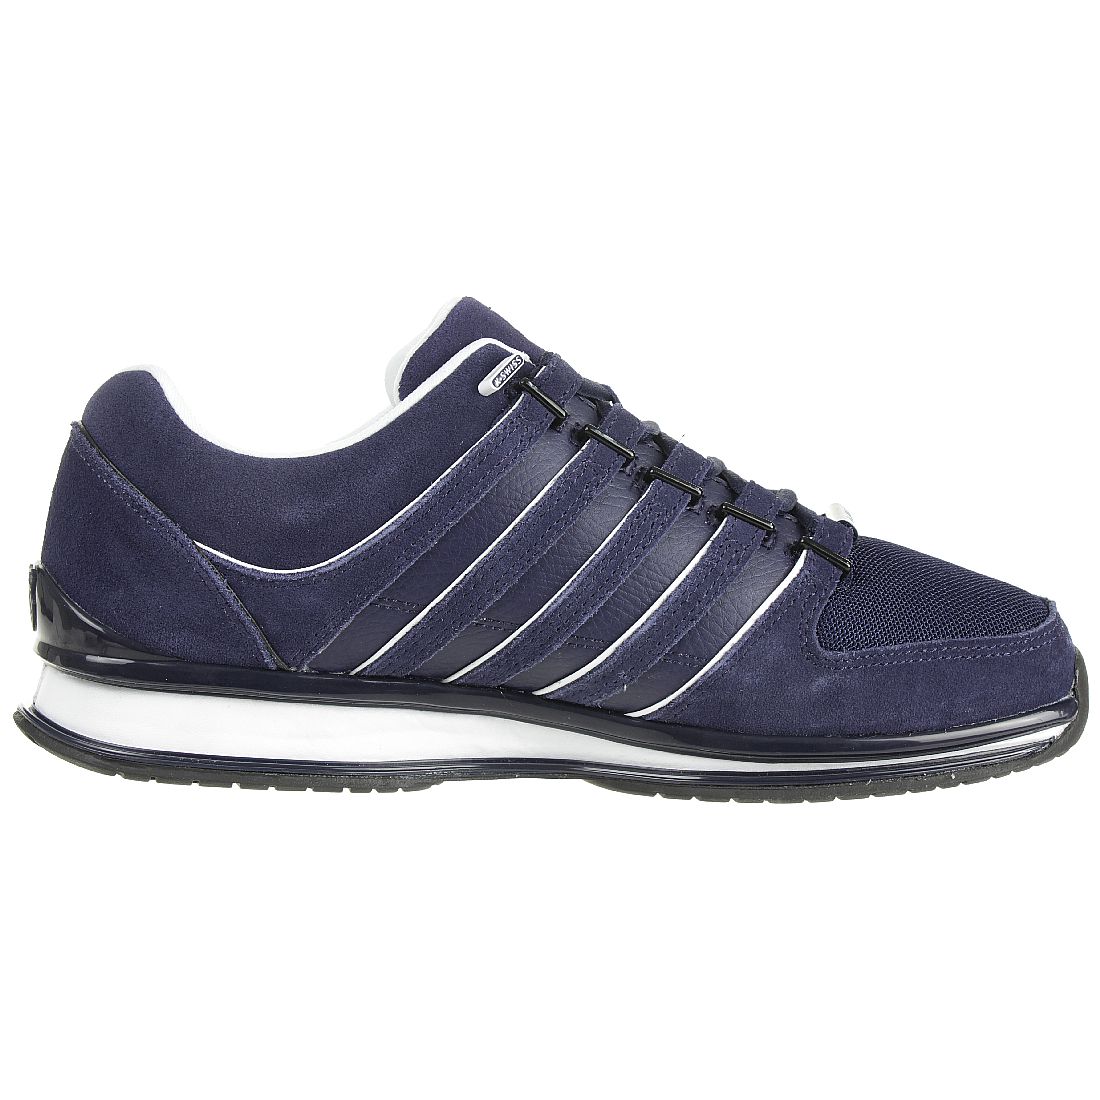 K-Swiss Rinzler SP SDE Sneaker 05878-484-M blau